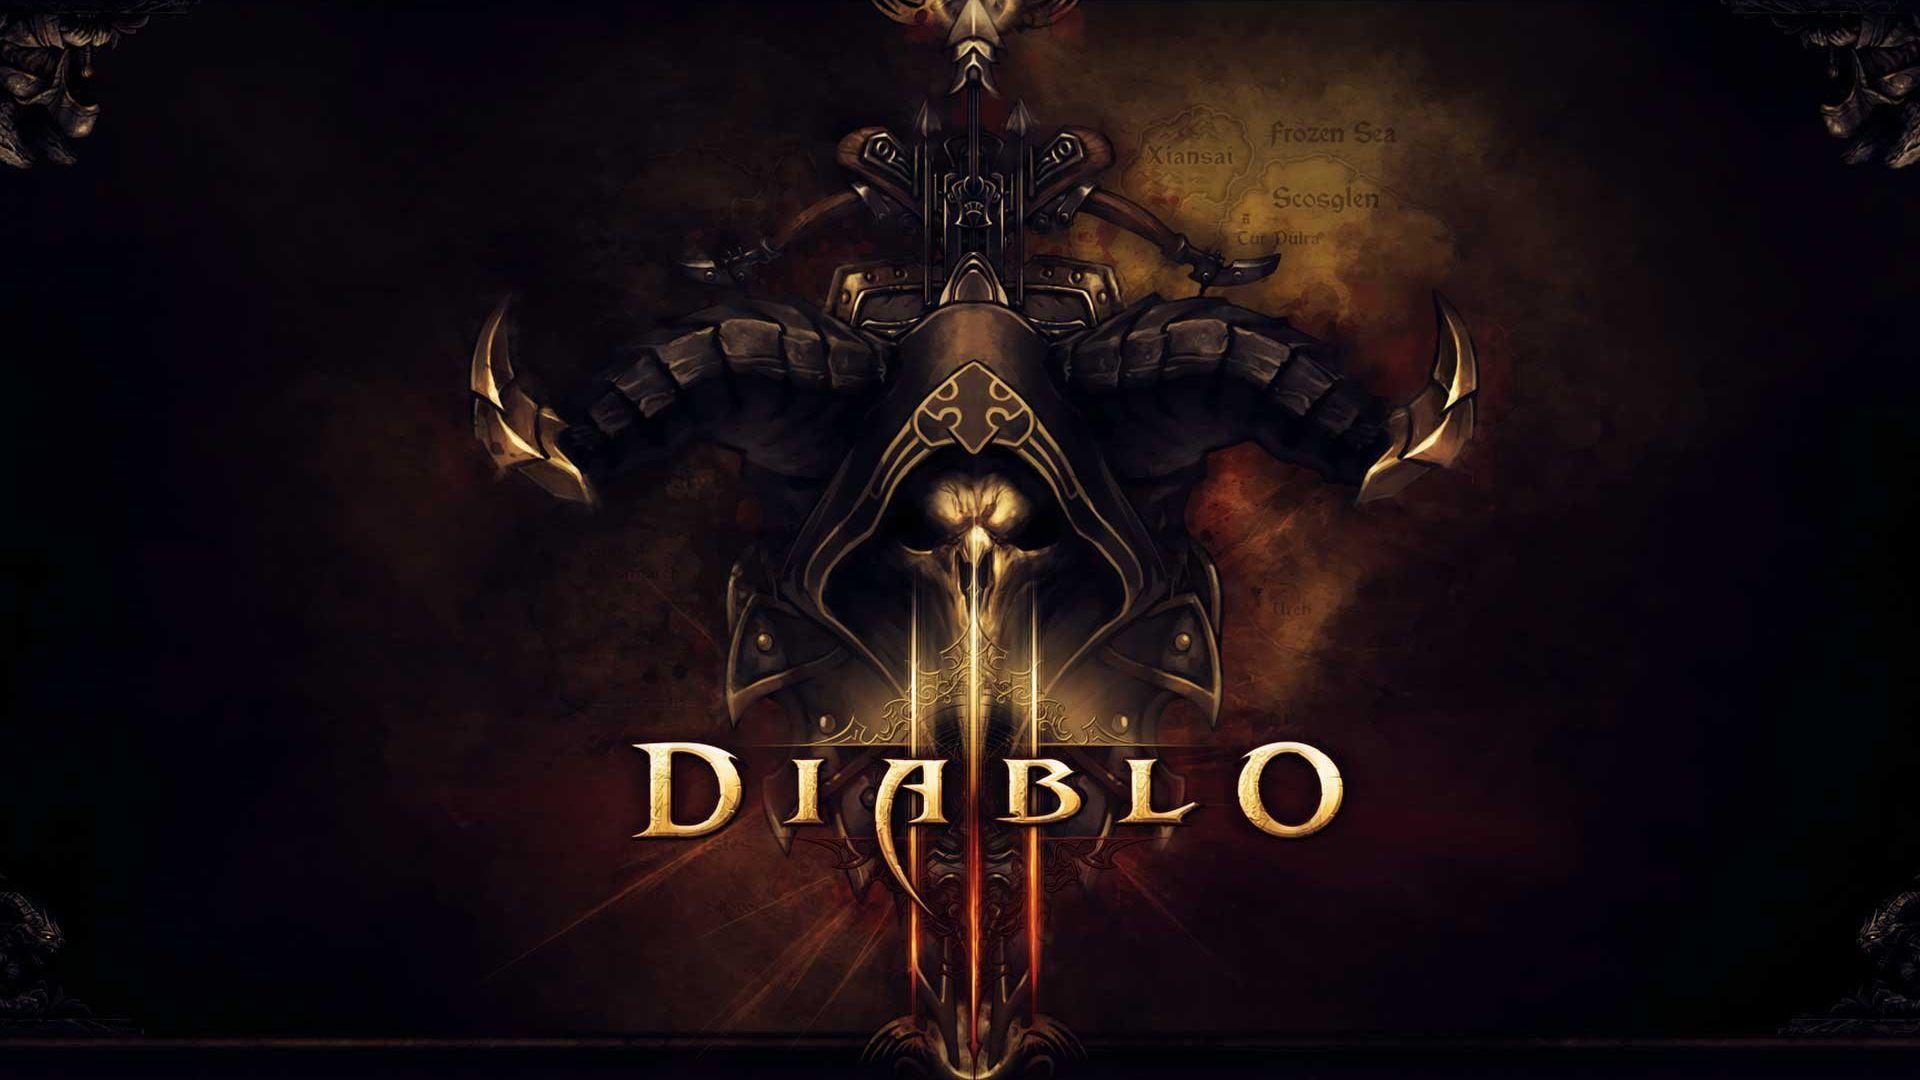 Diablo III HD Wallpaper 6 X 1080